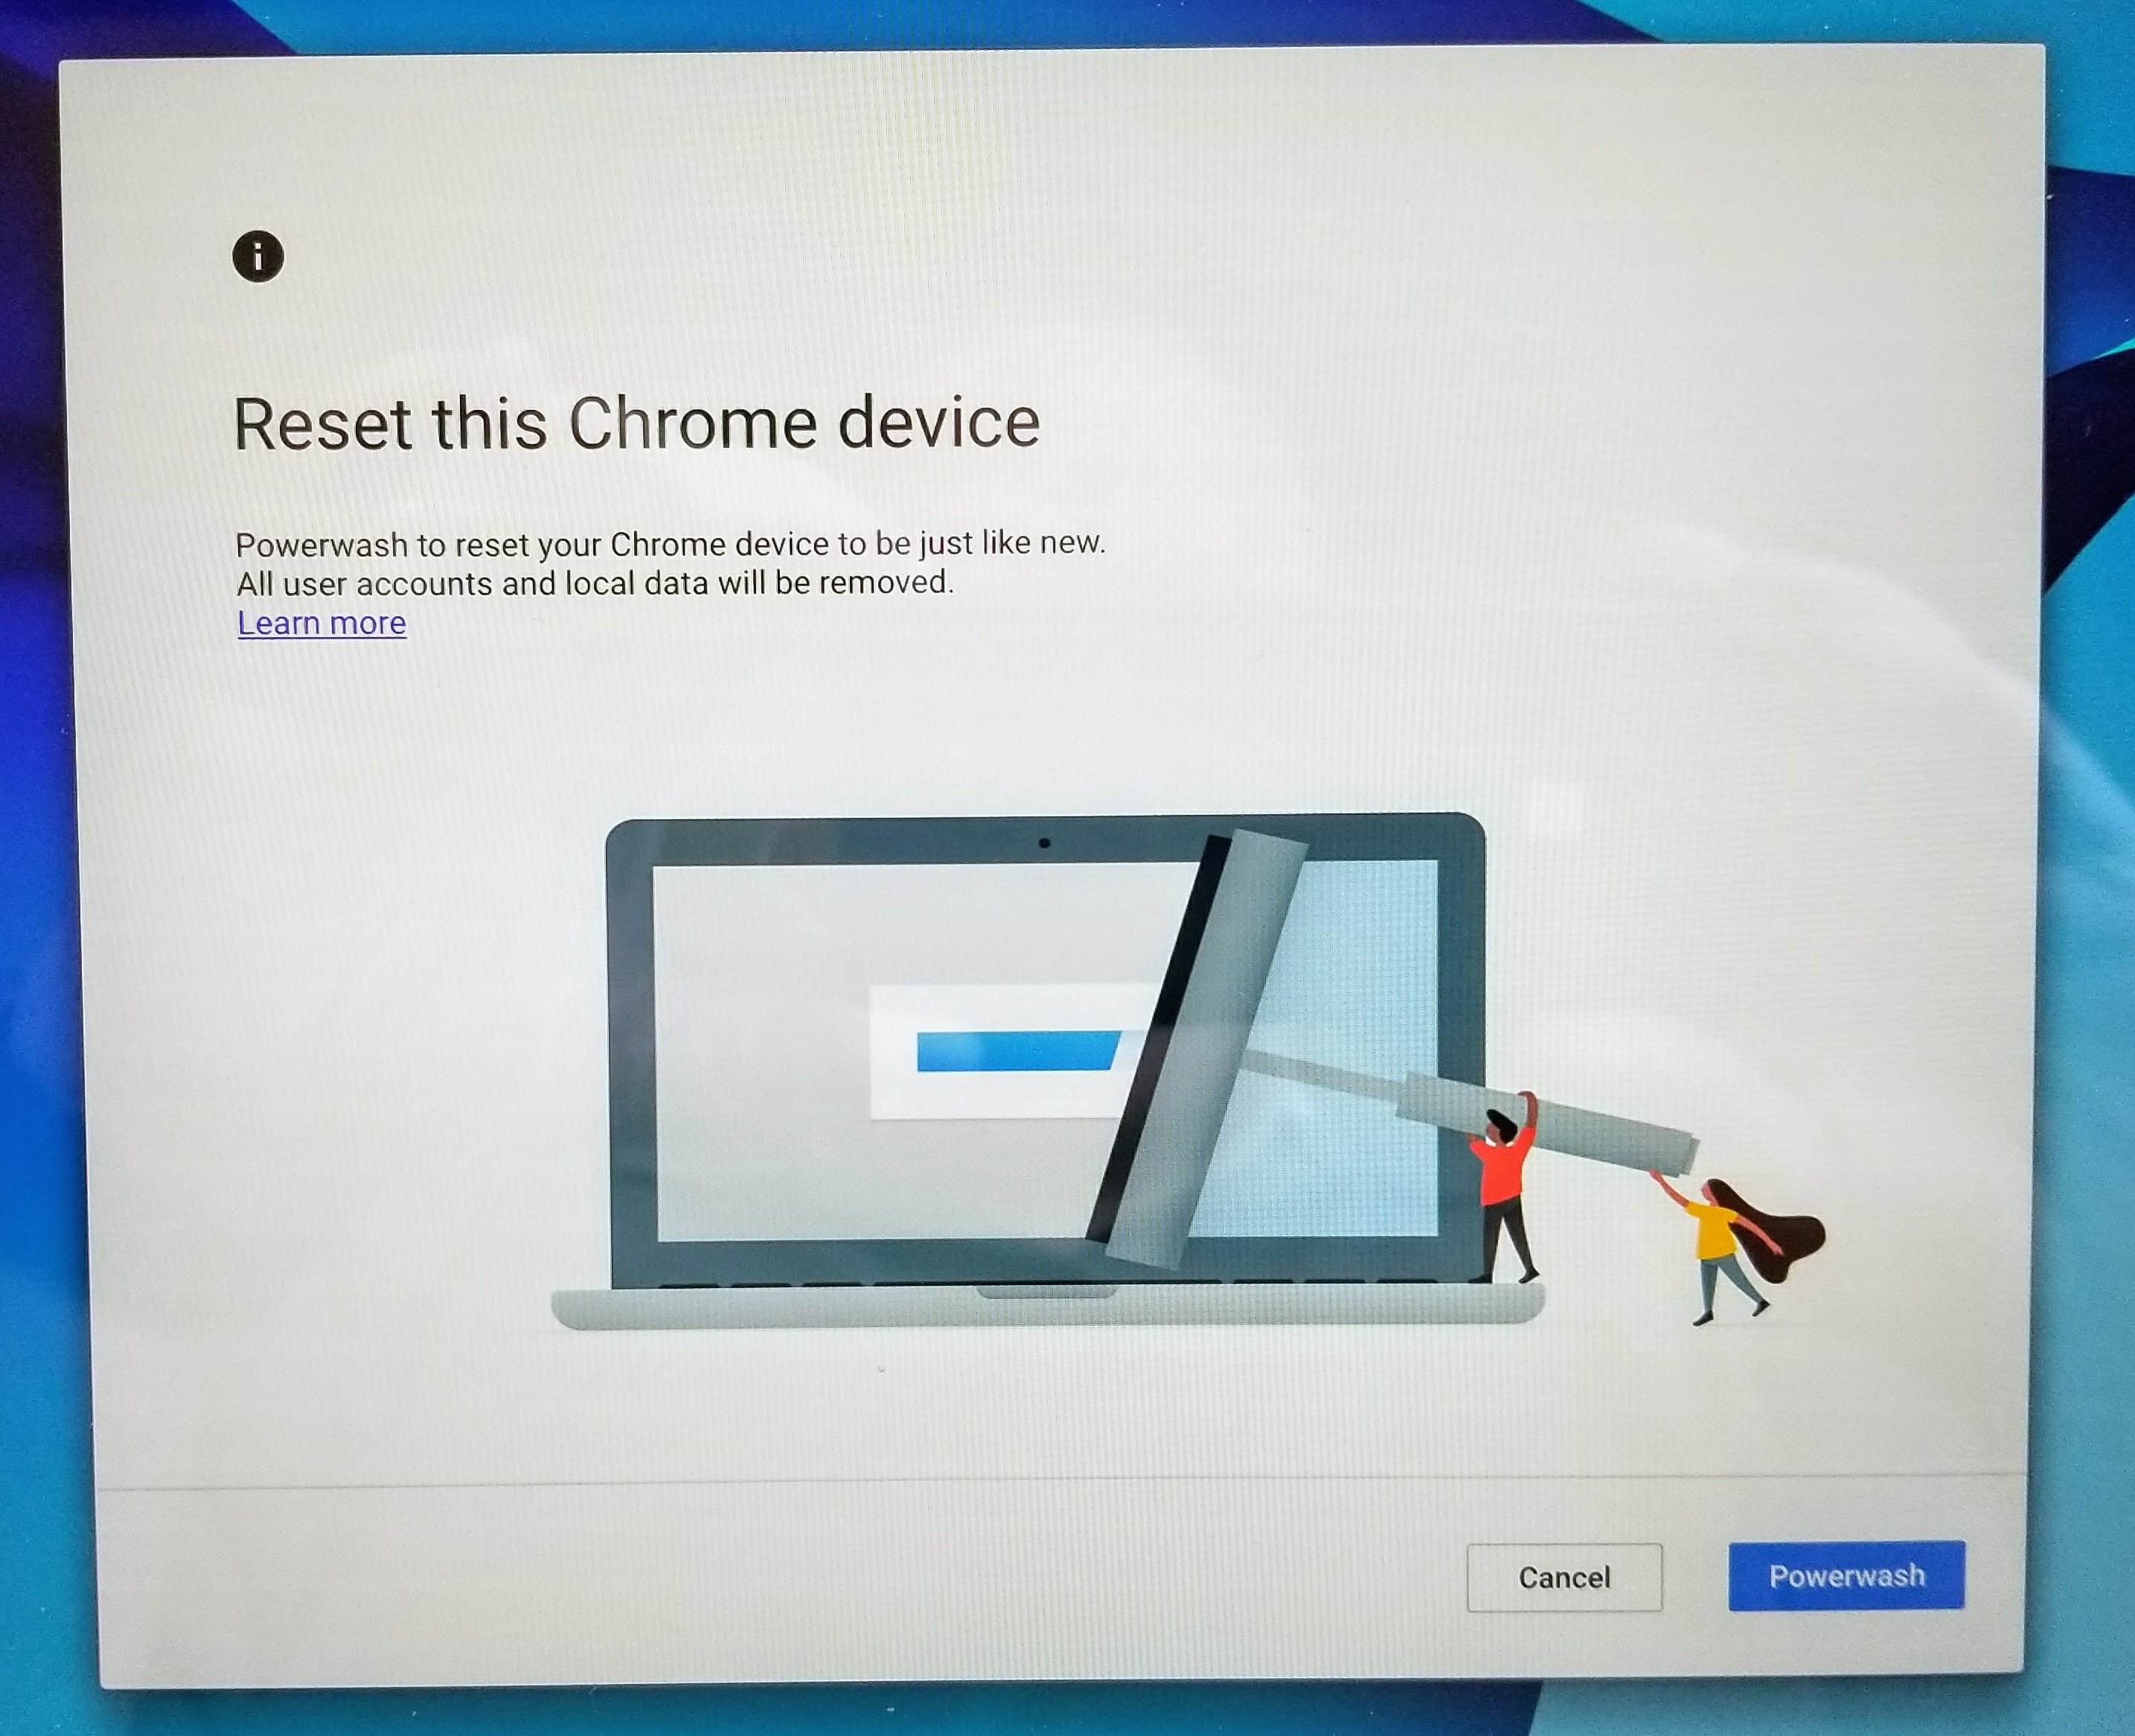 click on powerwash when Chromebook restarts